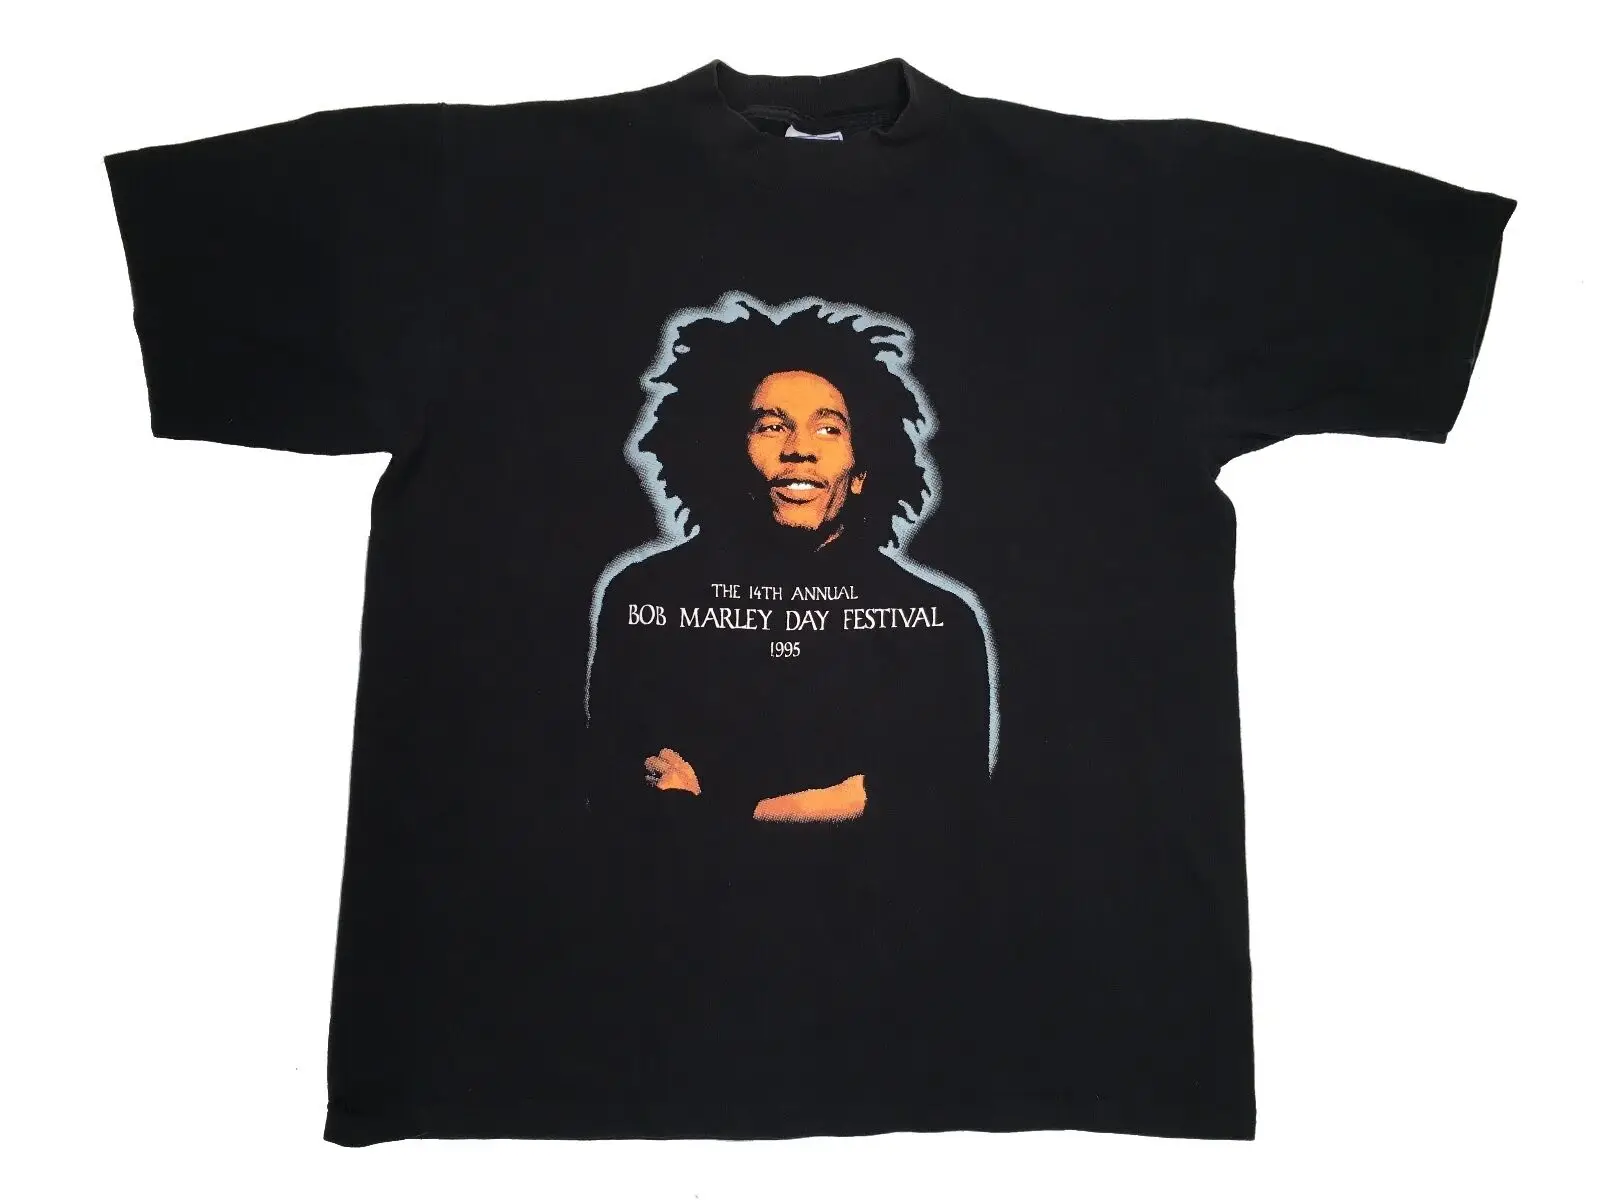 BOB MARLEY DAY CONCERT 1995 футболка винтажные корни регги Аутентичные 90s большой